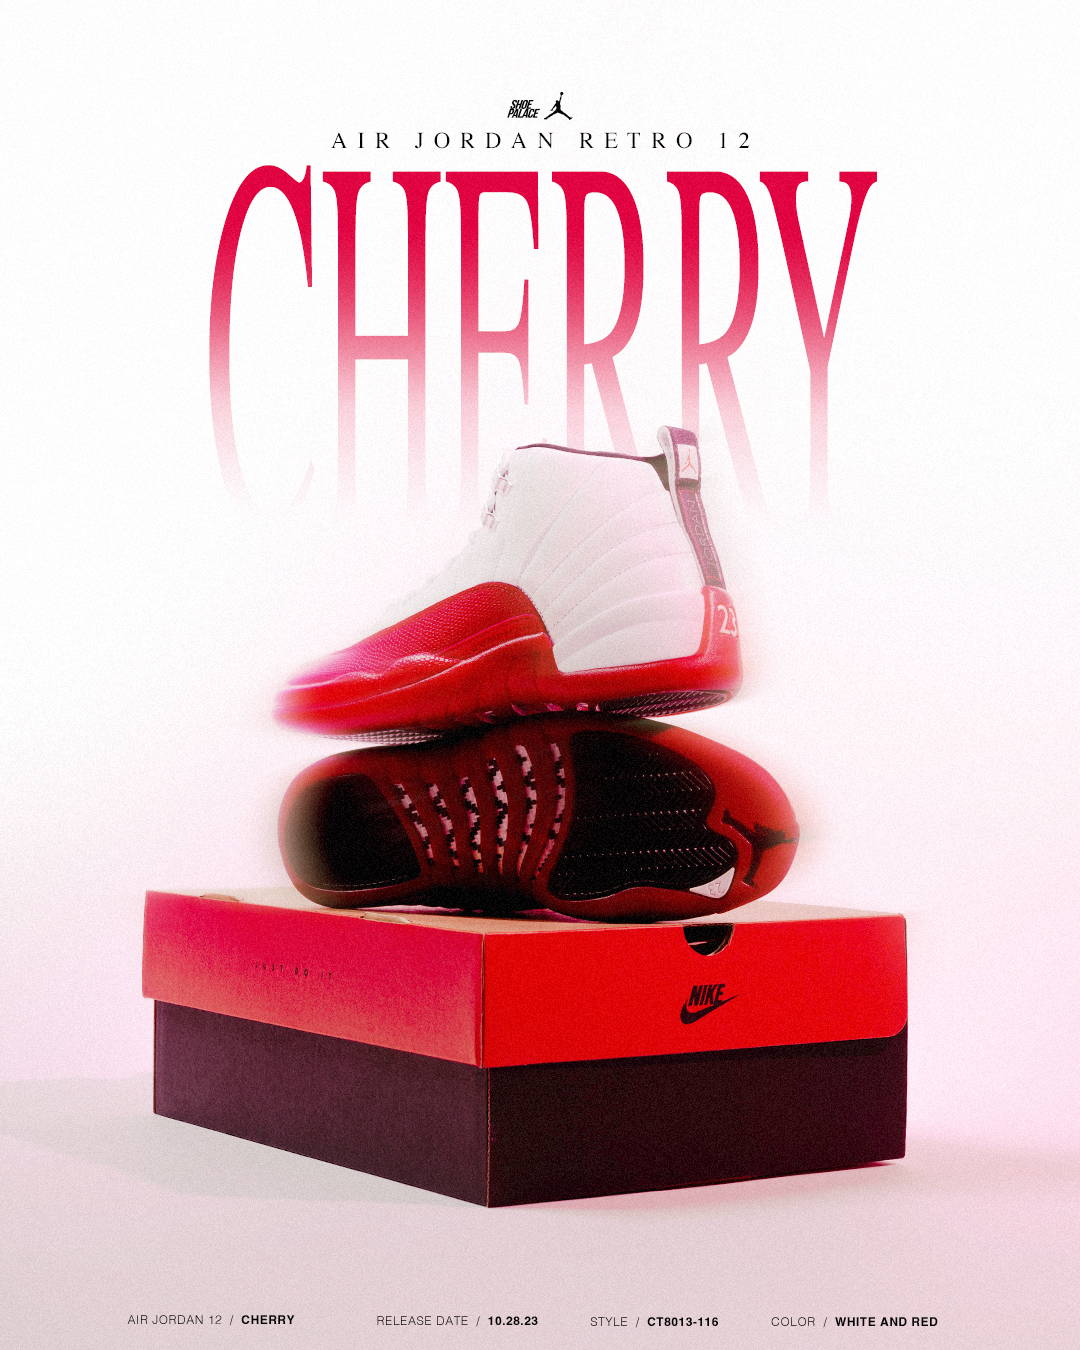 Air Jordan 12 “Cherry” 